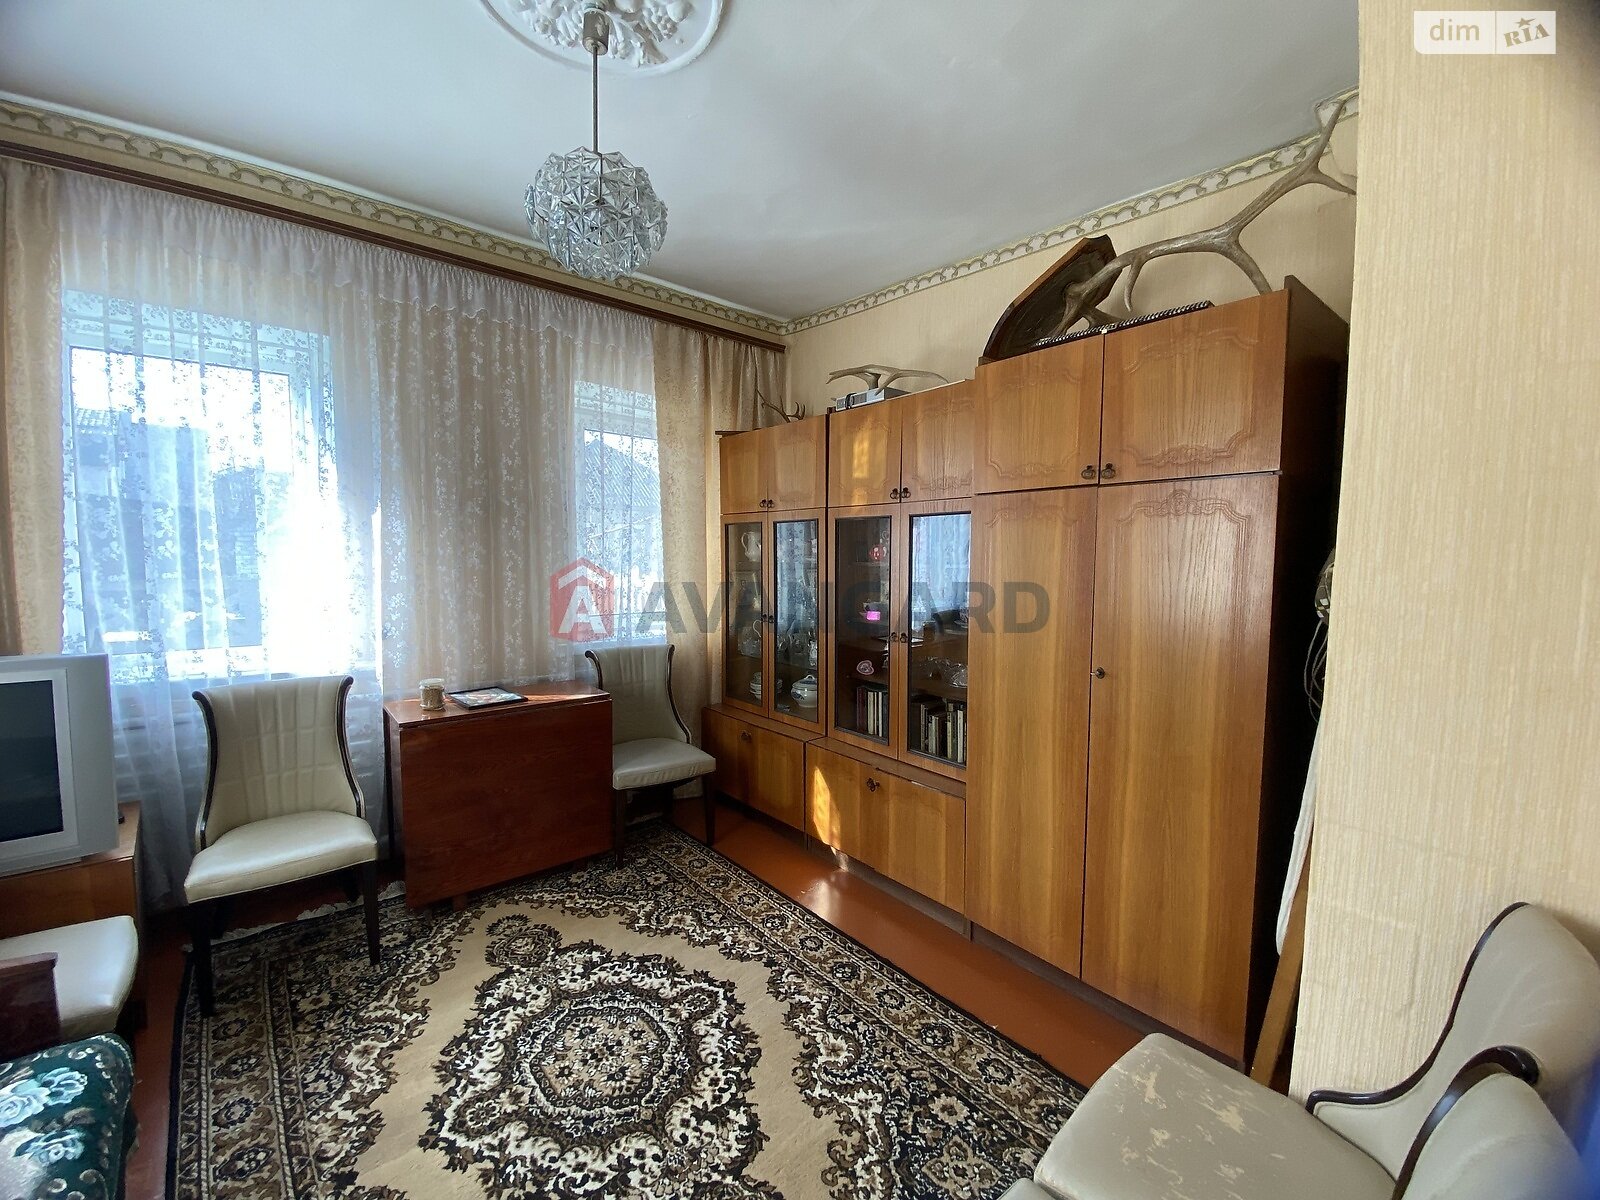 Продажа части дома в Черкассах, переулок Слободской (Совхозный) 25, район Приднепровский, 1 комната фото 1